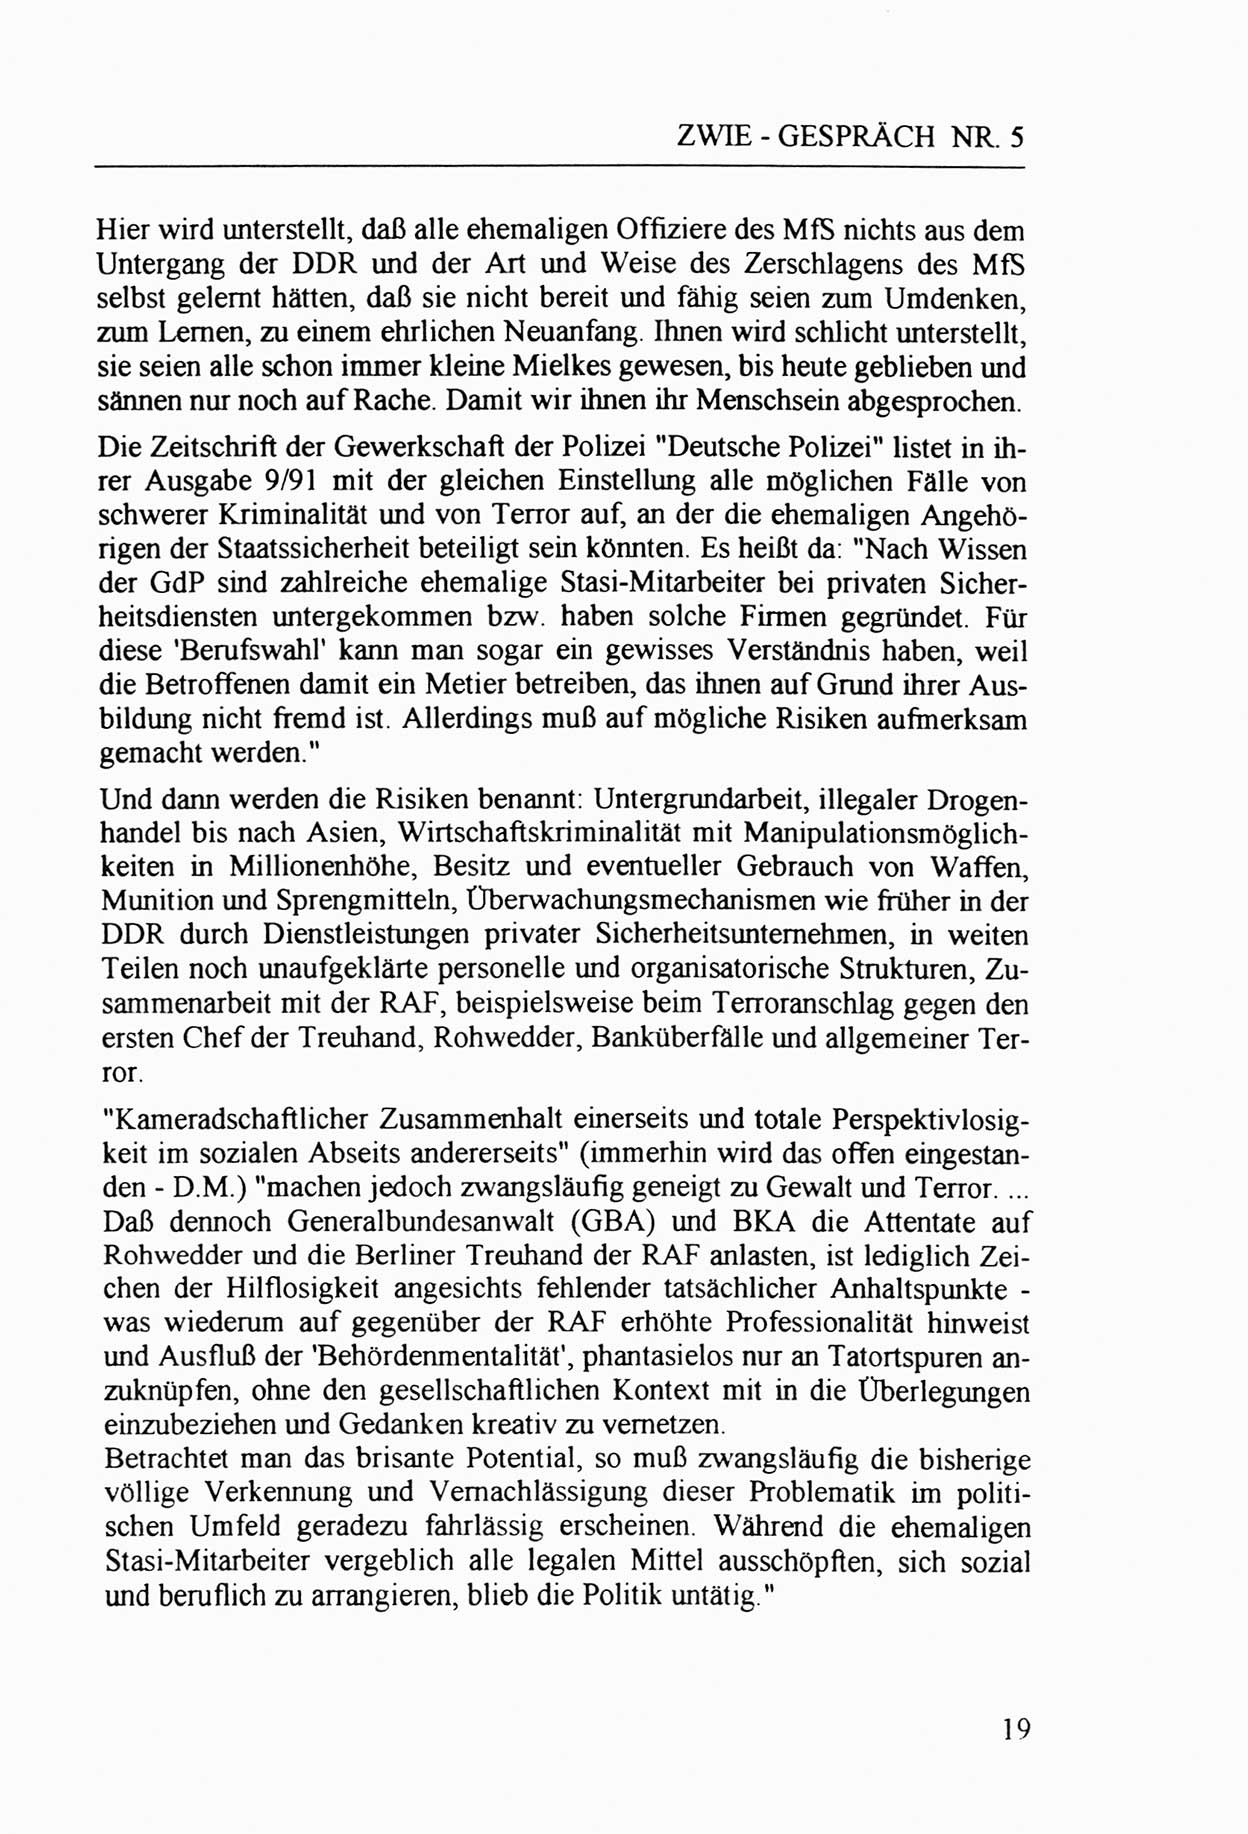 Zwie-Gespräch, Beiträge zur Aufarbeitung der Staatssicherheits-Vergangenheit [Deutsche Demokratische Republik (DDR)], Ausgabe Nr. 5, Berlin 1991, Seite 19 (Zwie-Gespr. Ausg. 5 1991, S. 19)